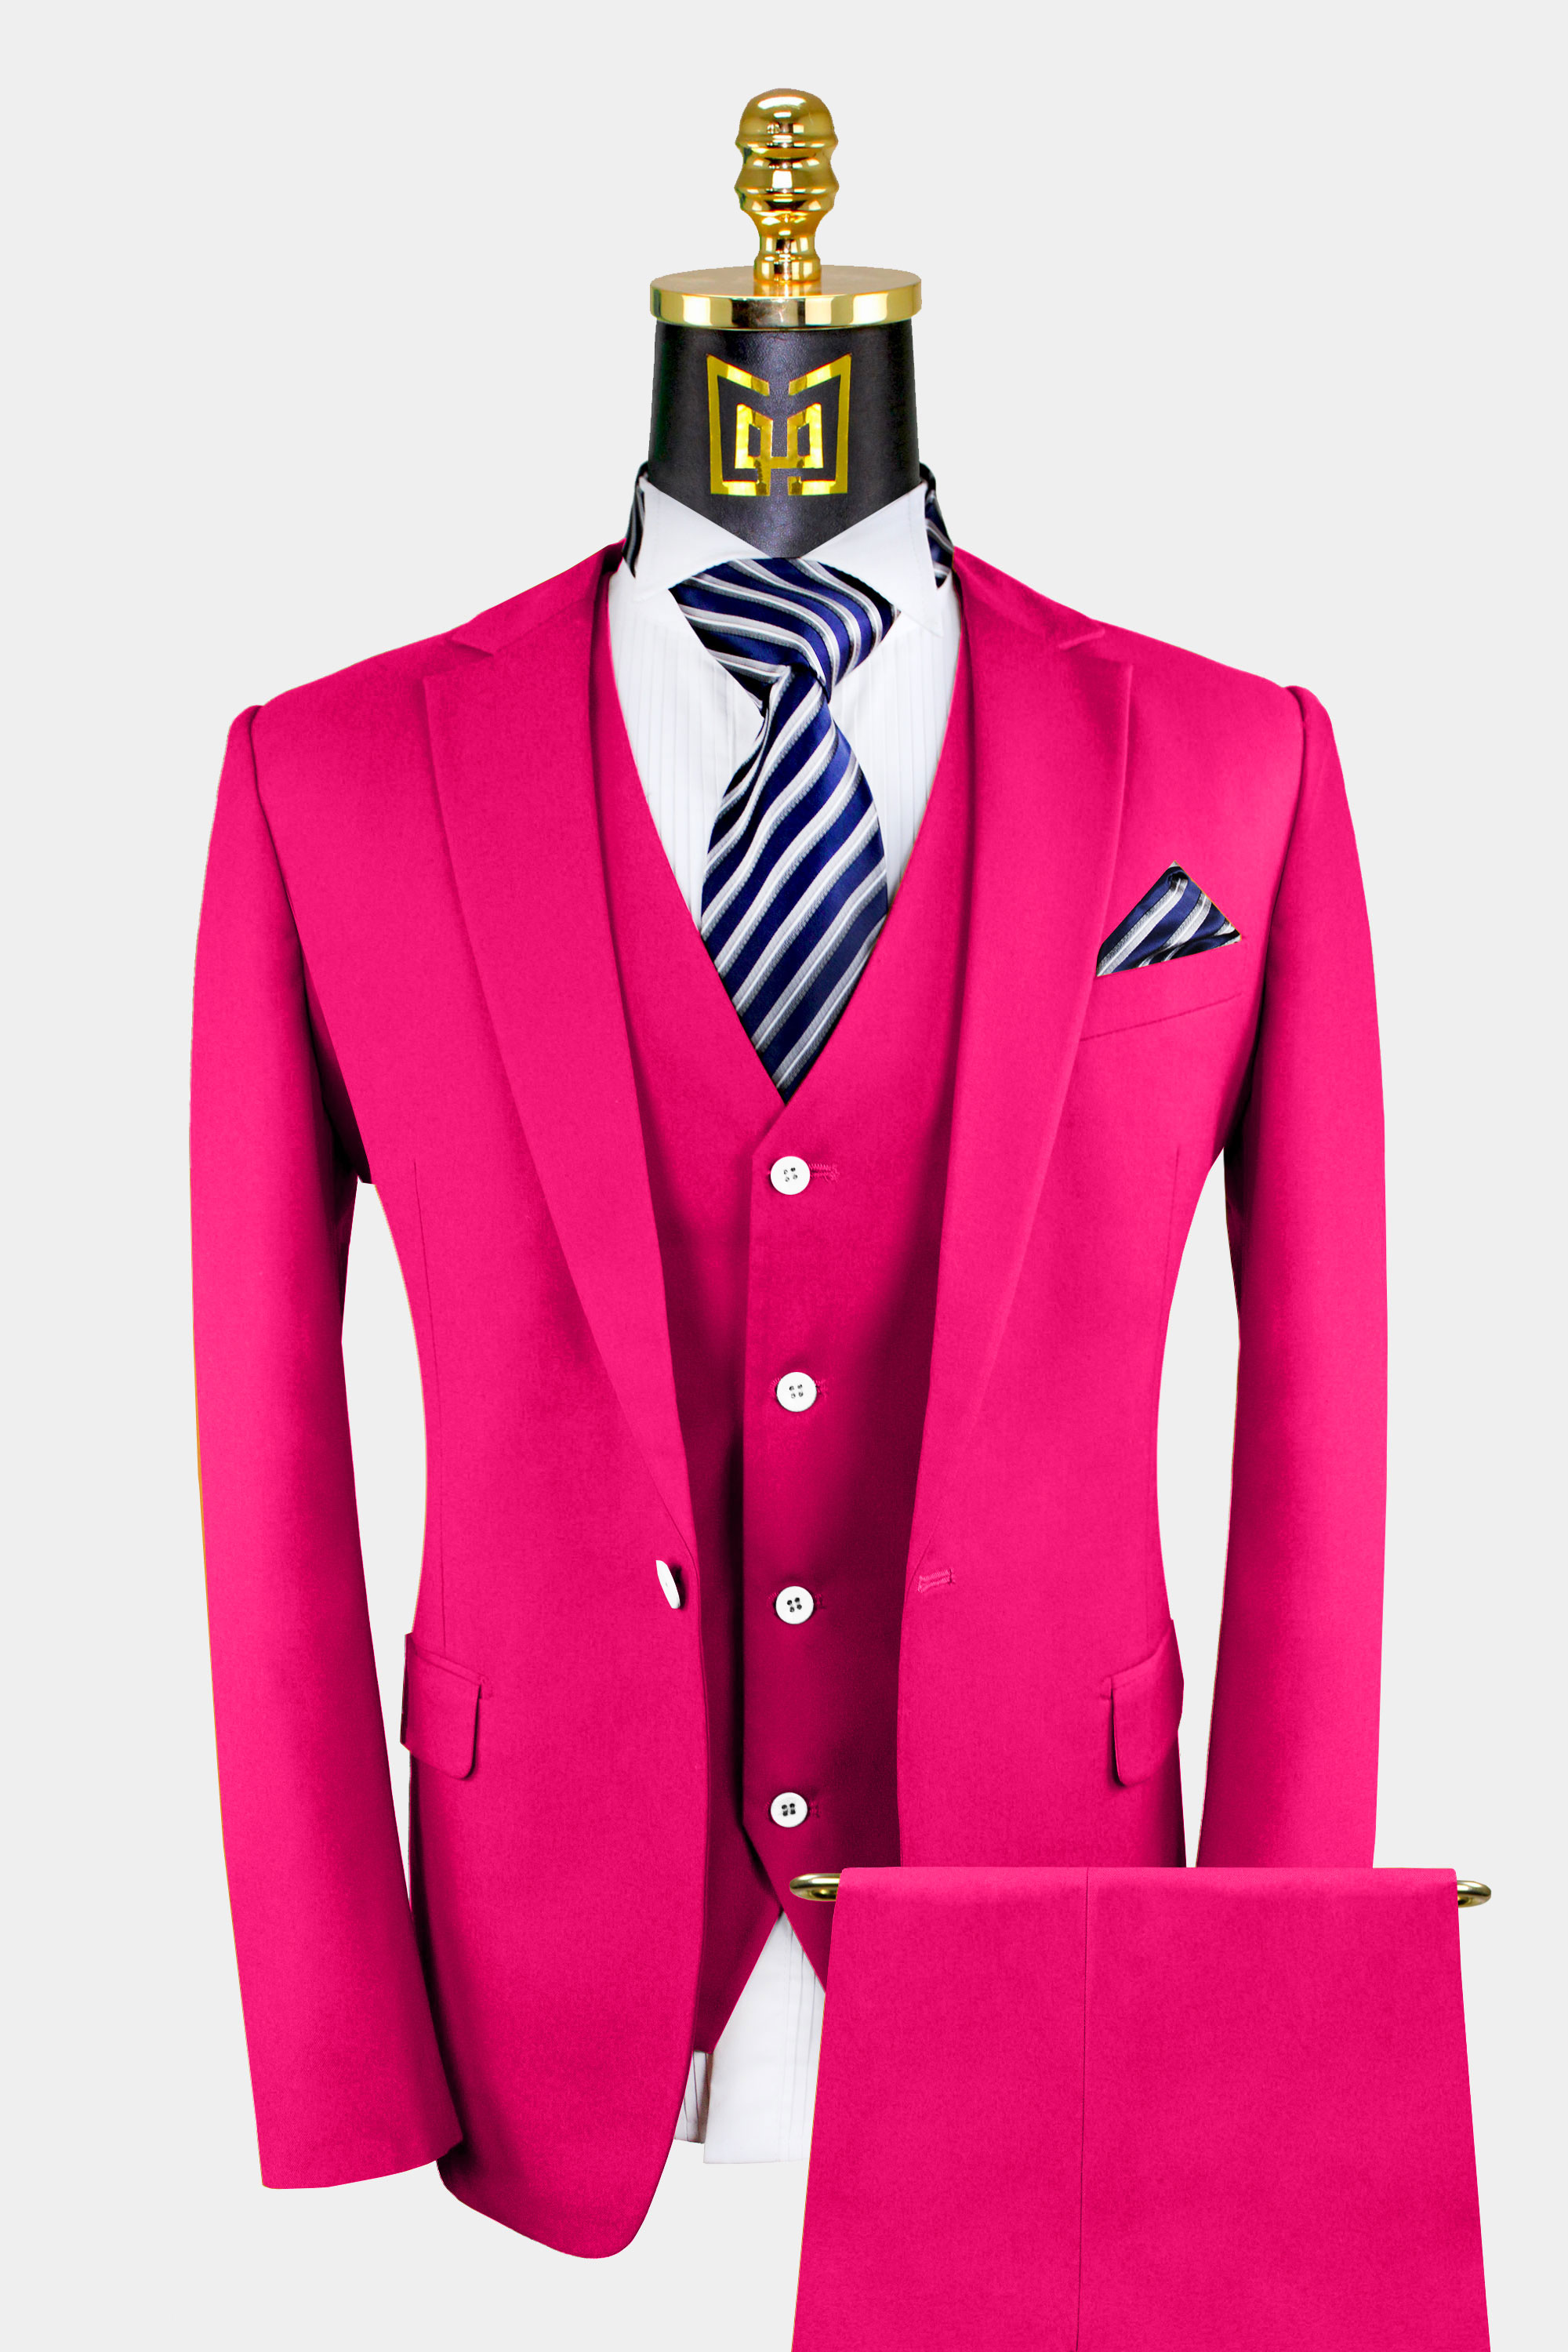 Mens-Hot-Pink-Suit-Wedding-GroomProm-Tuxedo-from-Gentlemansguru.com